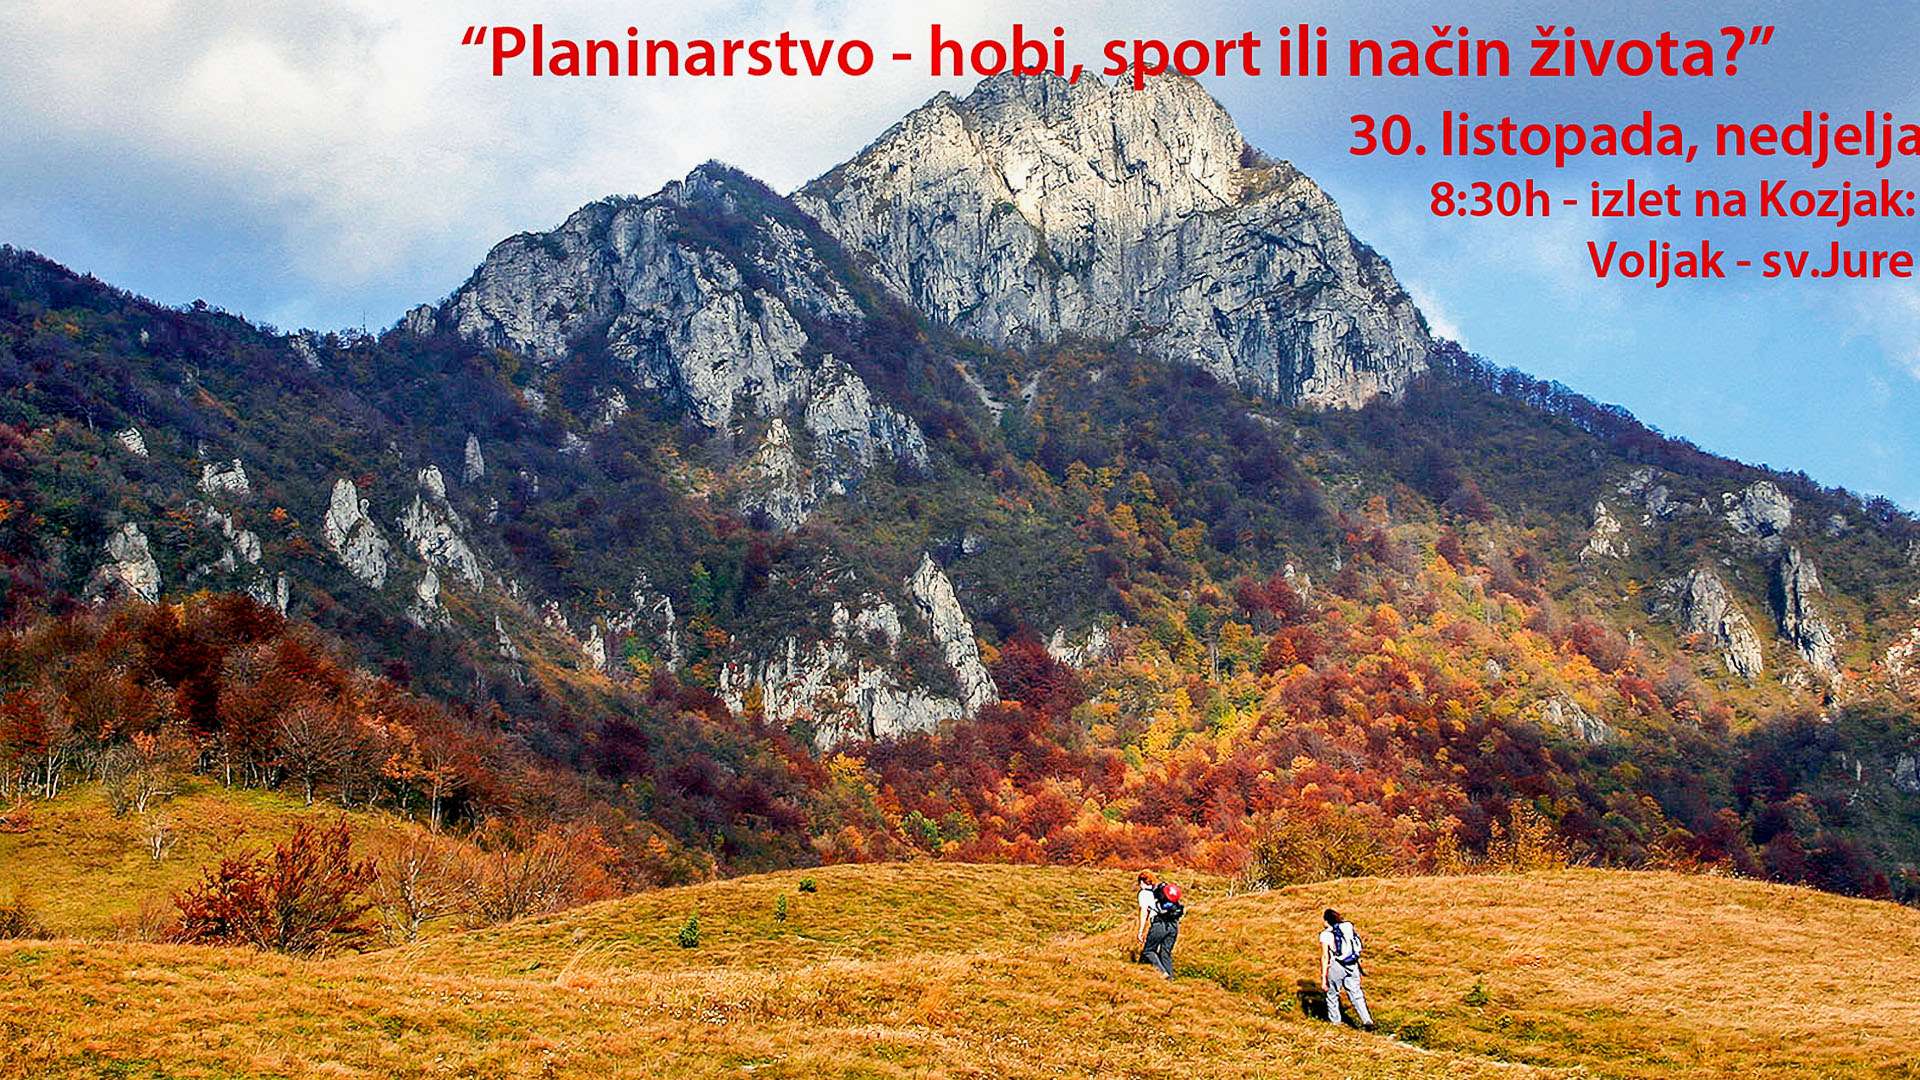 Planinarsko društvo Sveti Jure